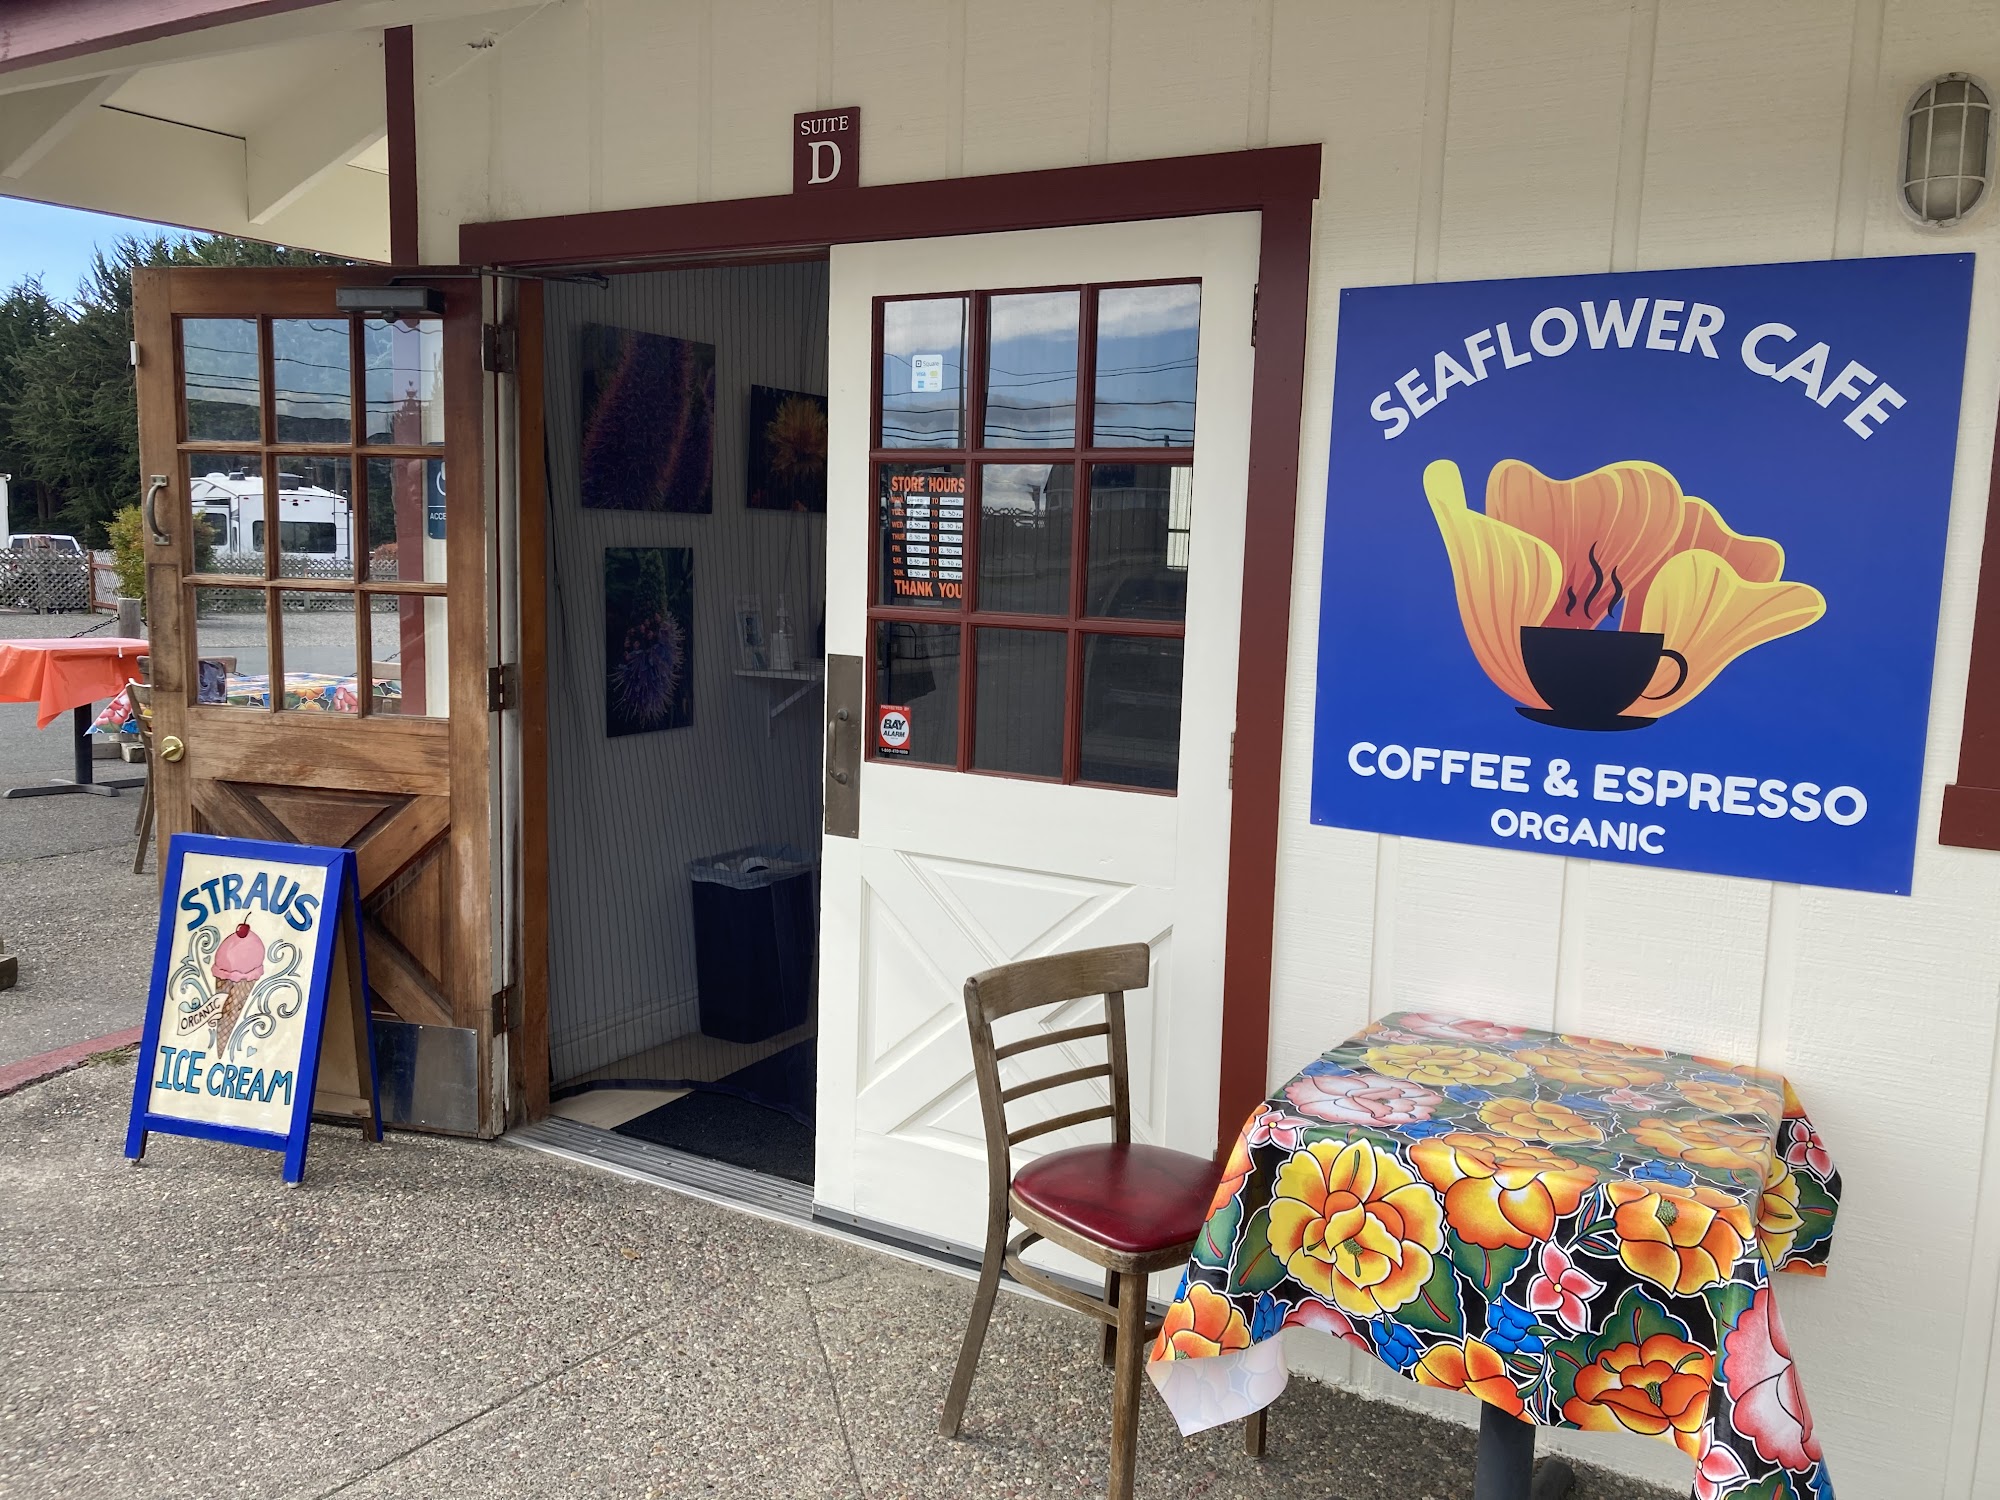 Sea Flower Cafe and Espresso Bar